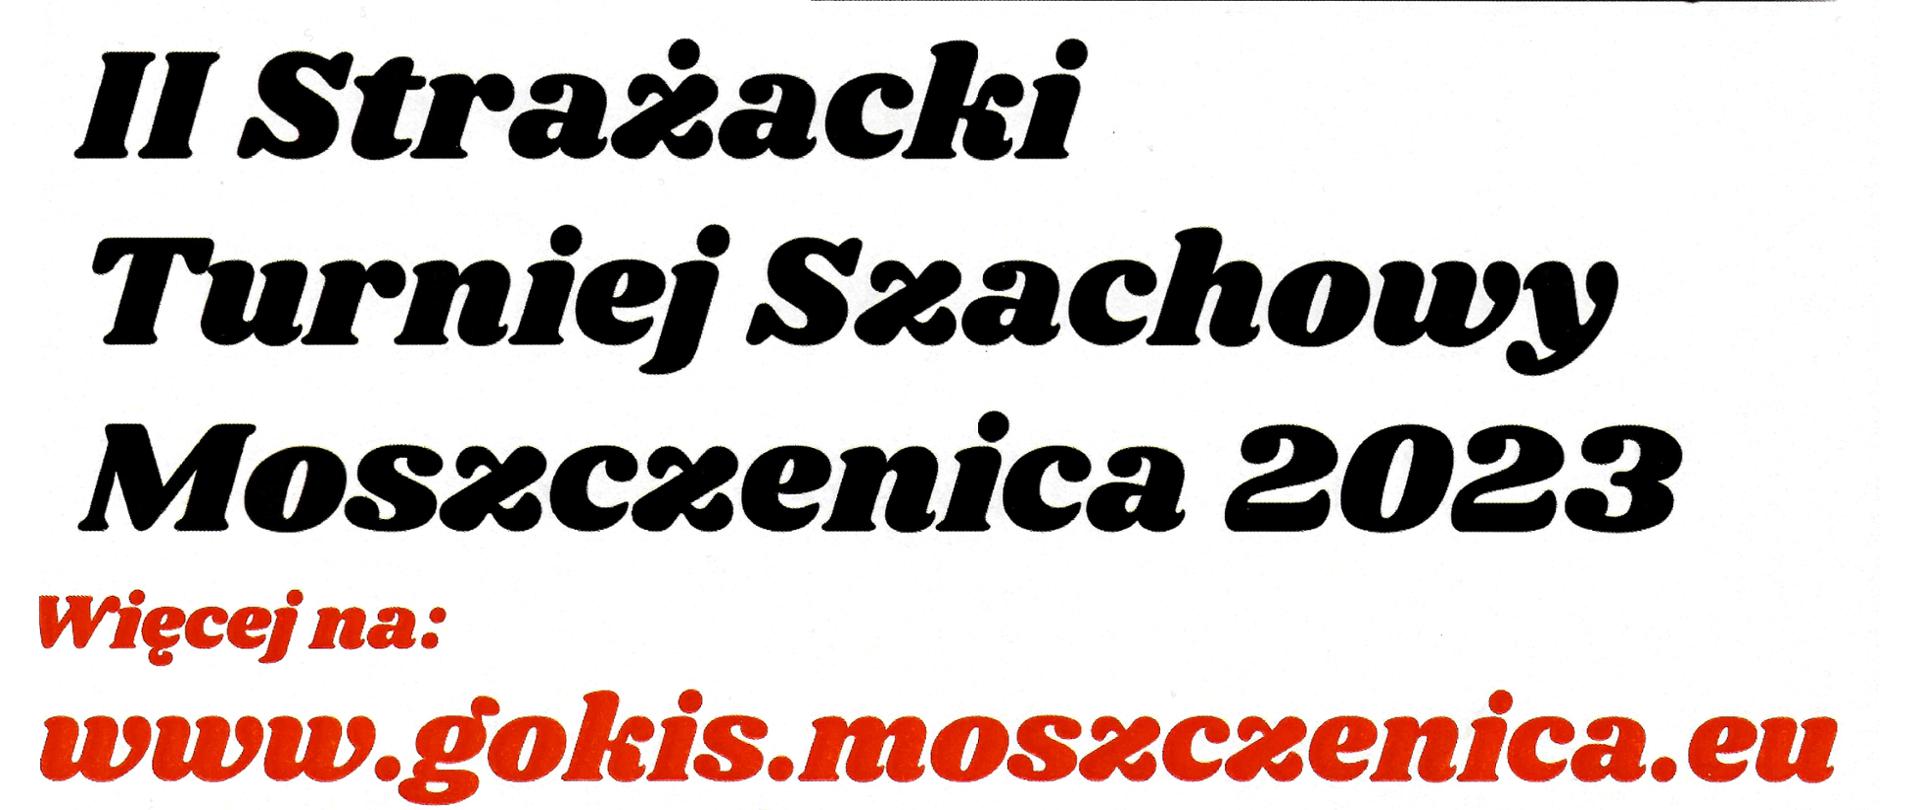 II Strażacki Turniej Szachowy Moszczenica 2023 odbędzie się 26.03.2023, więcej informacji na www.gokis.moszczenica.eu